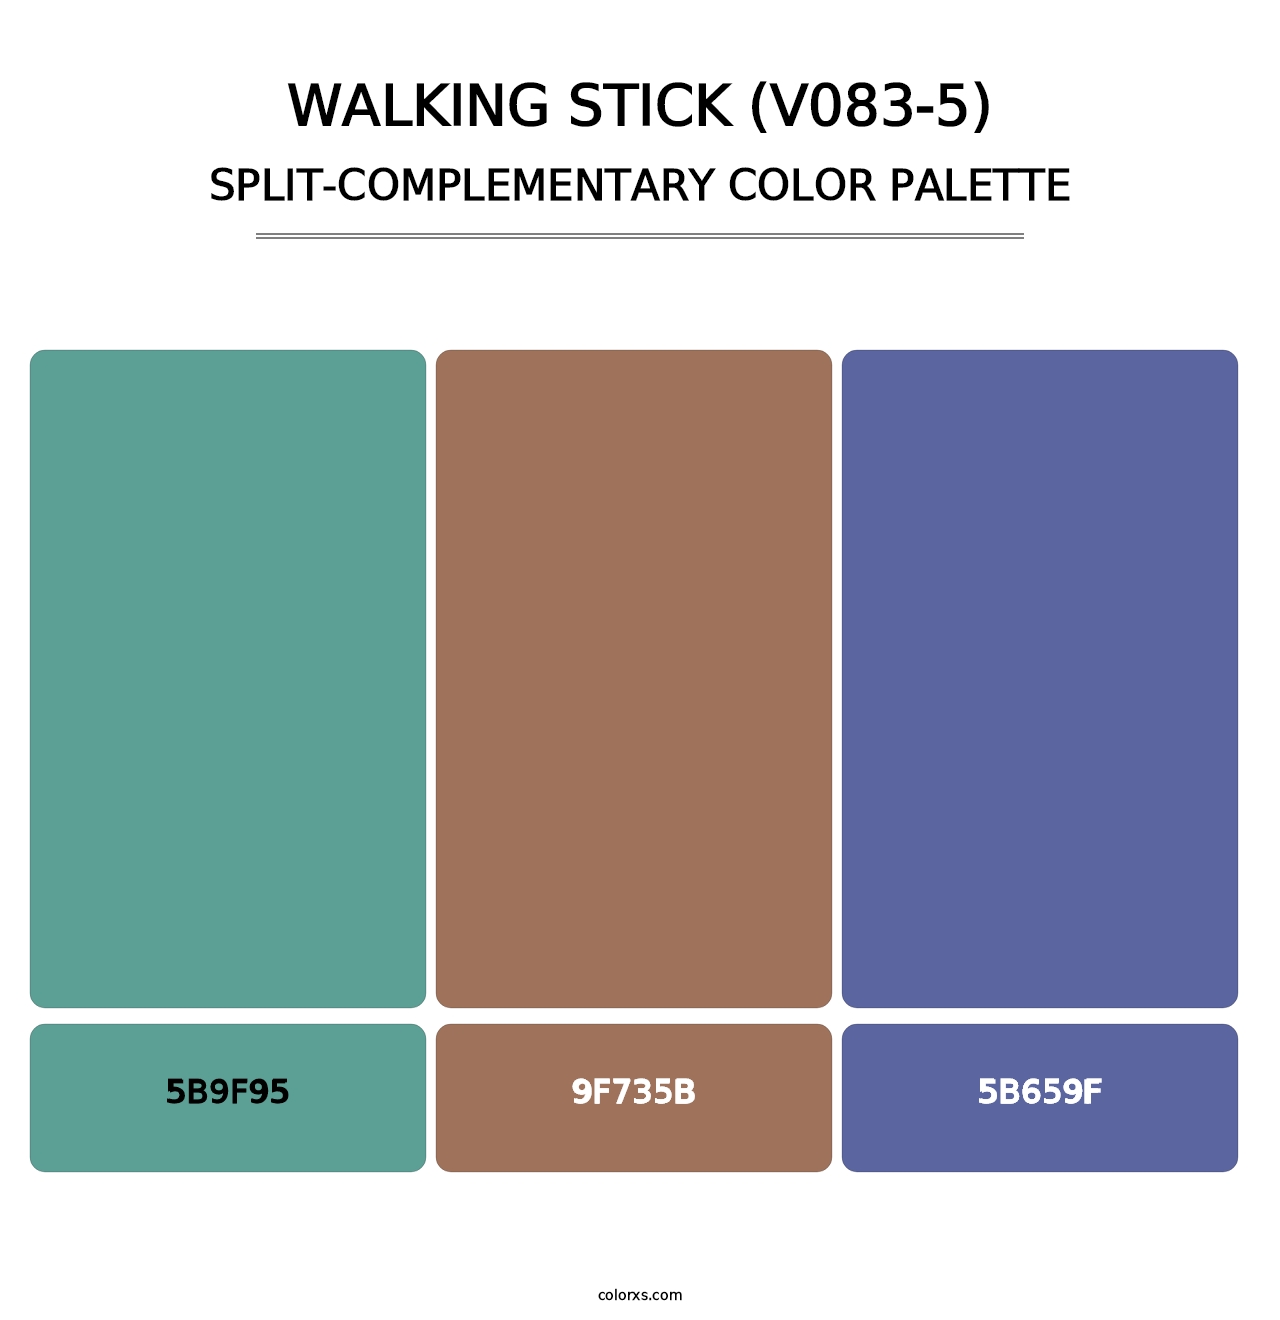 Walking Stick (V083-5) - Split-Complementary Color Palette